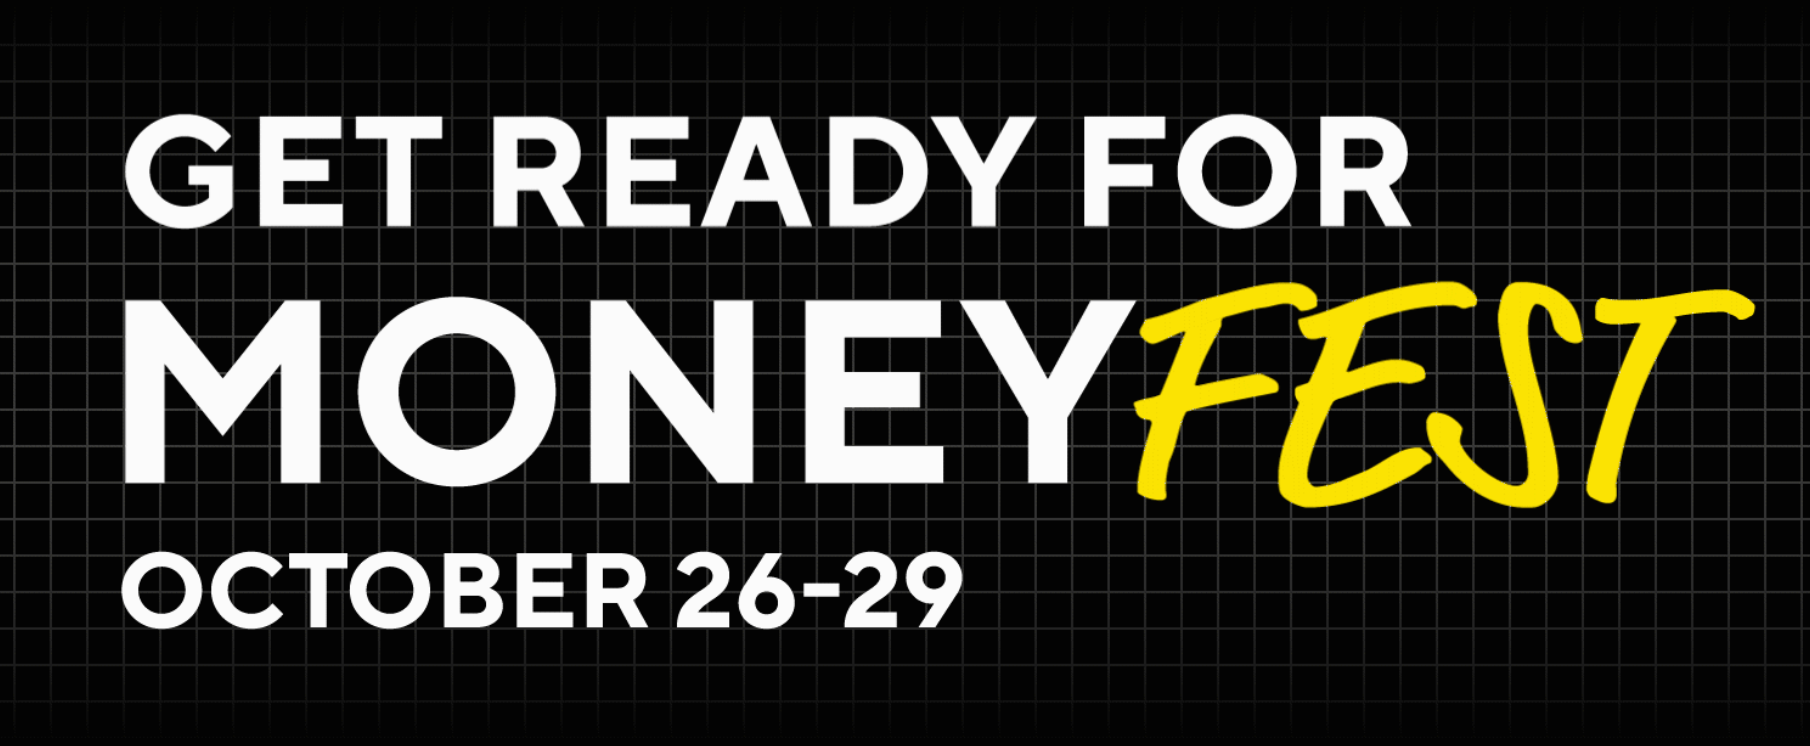 MoneyFest organized by Money2020 Europe